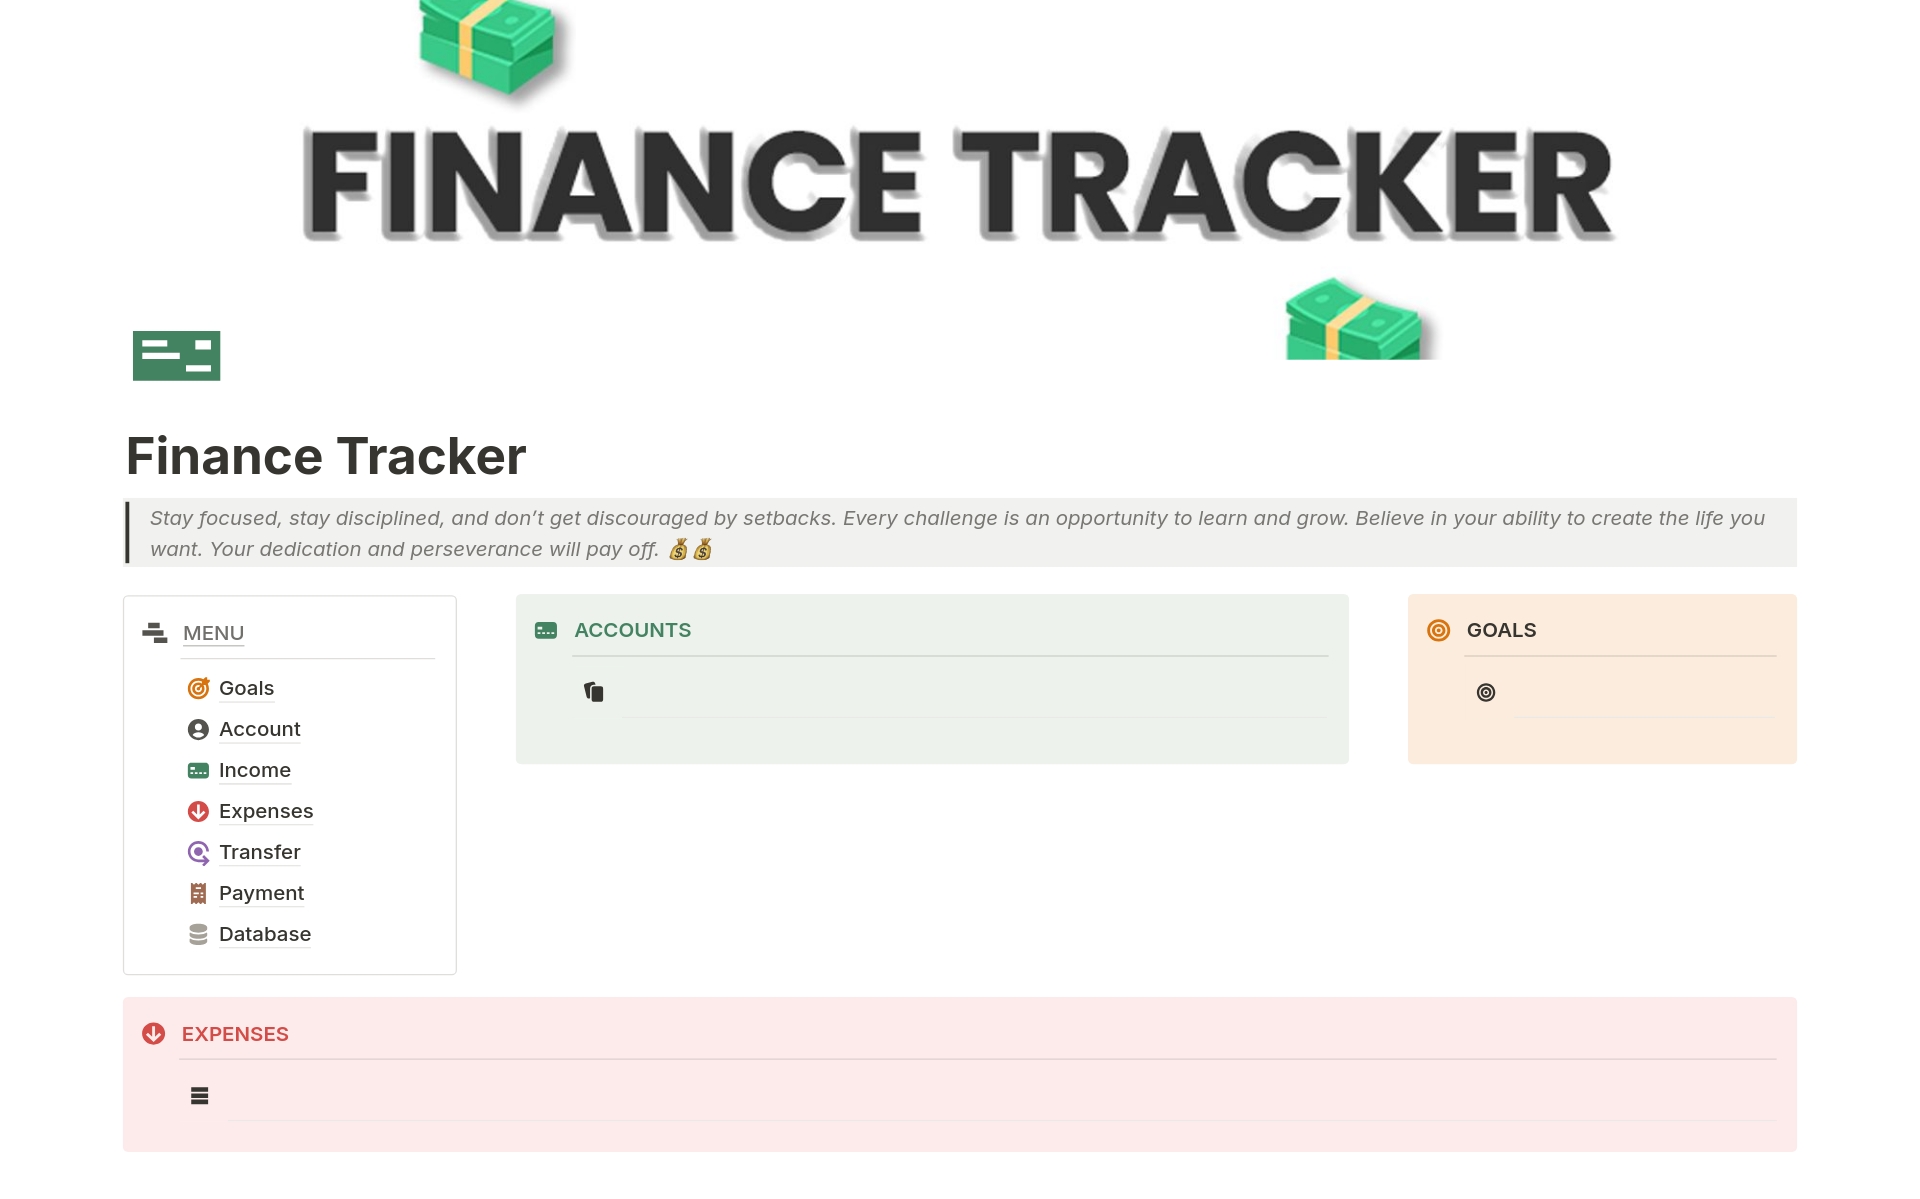 Uma prévia do modelo para Advanced Finance Tracker